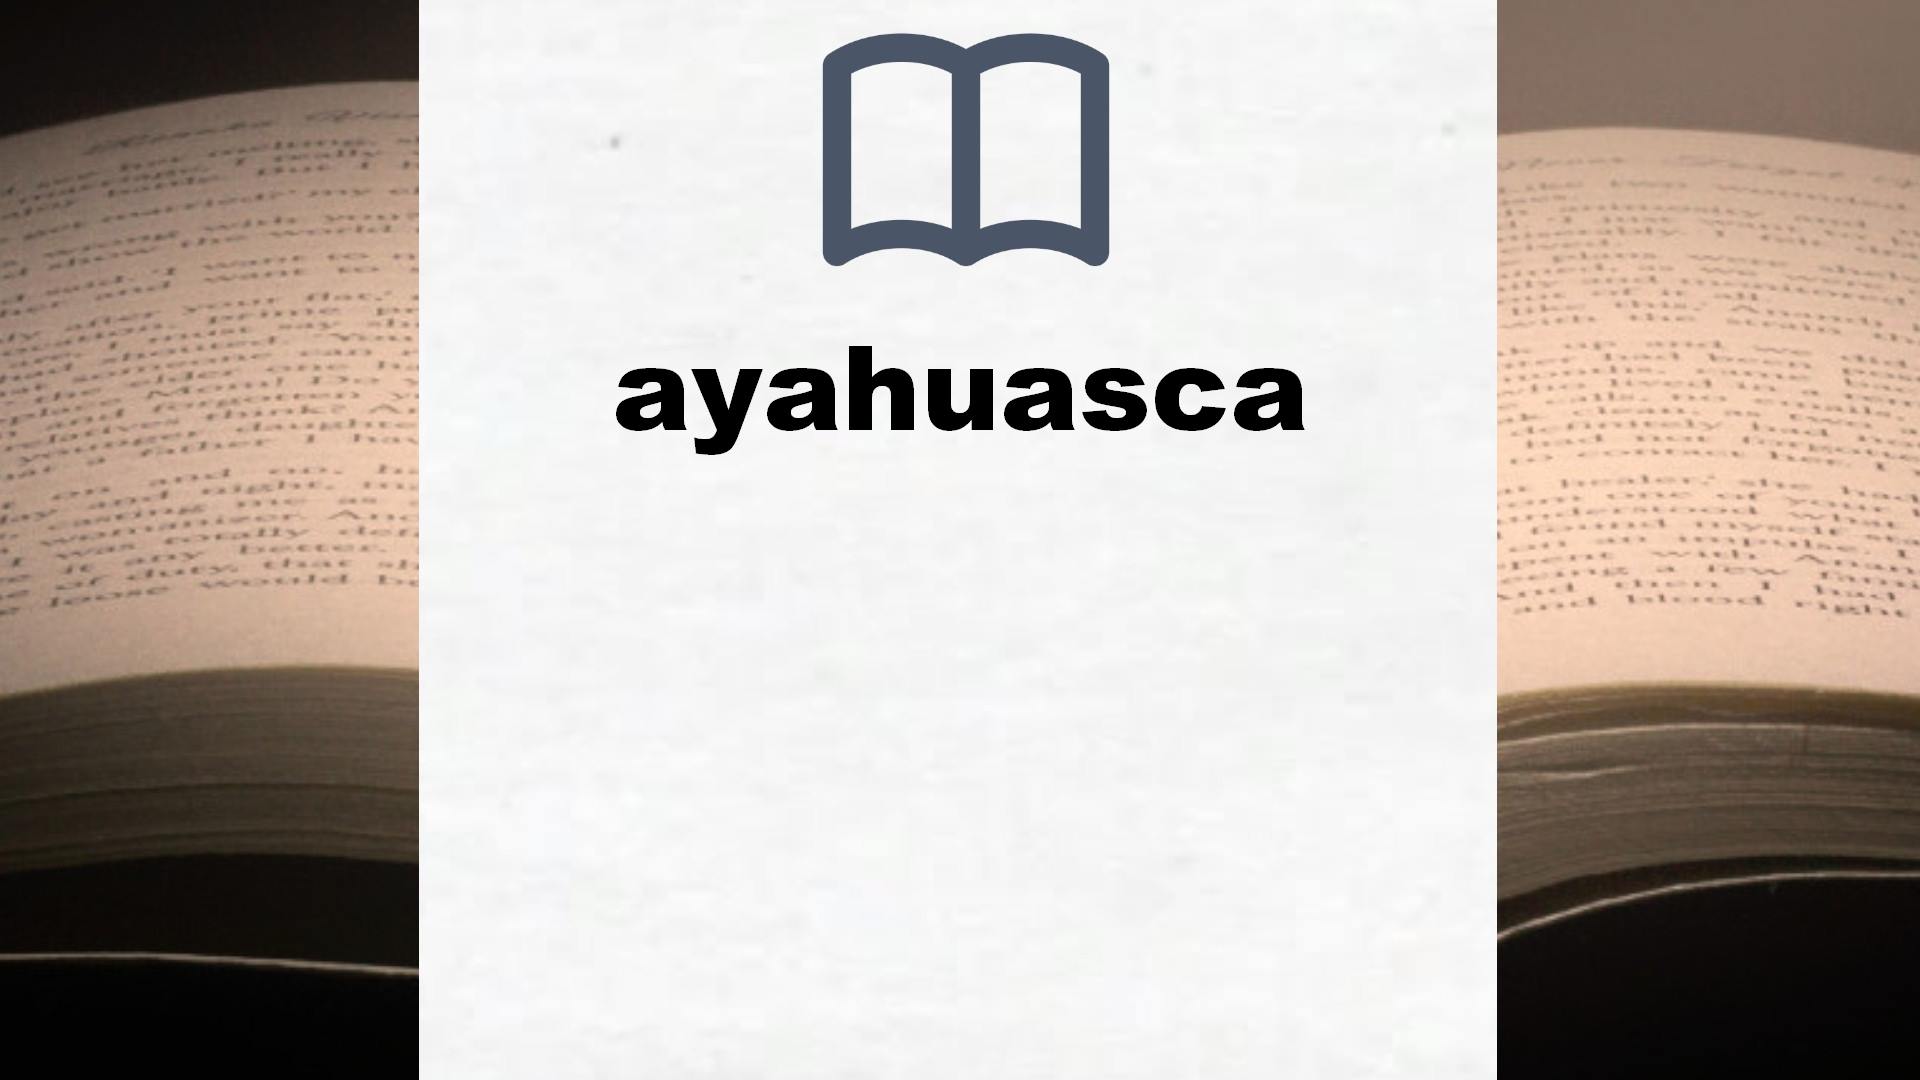 Libros sobre ayahuasca